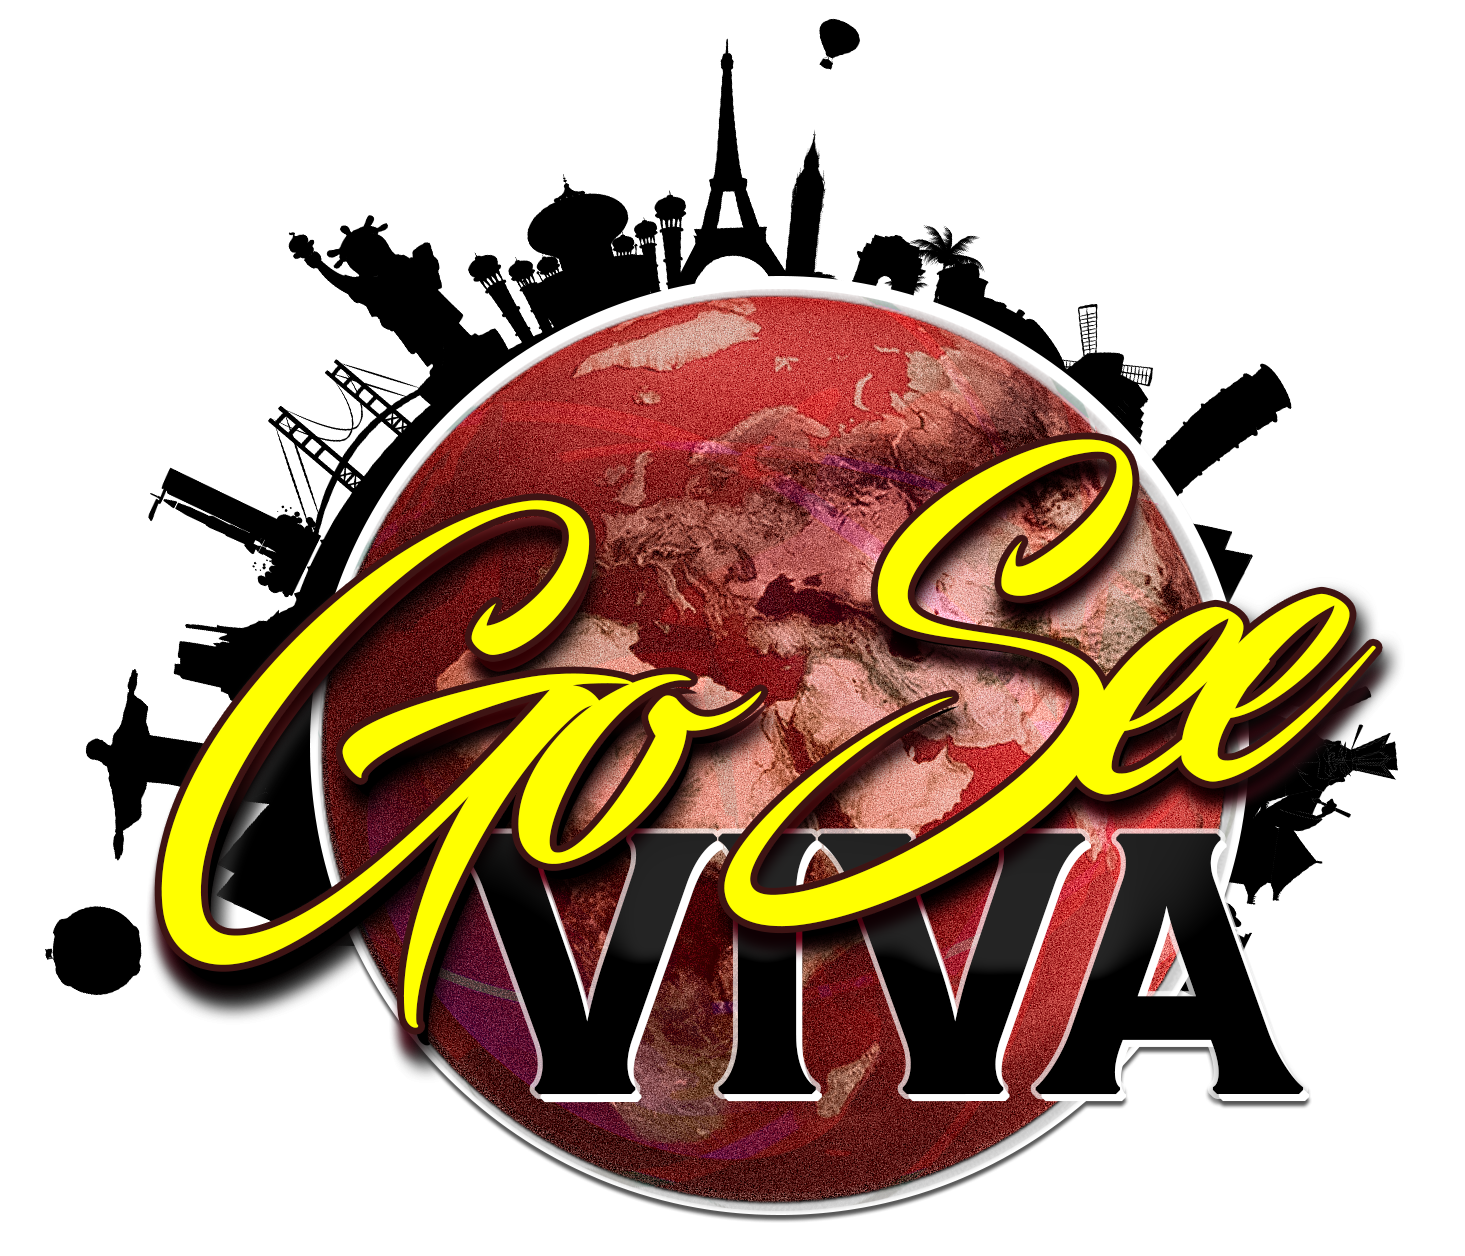 Go See Viva logo